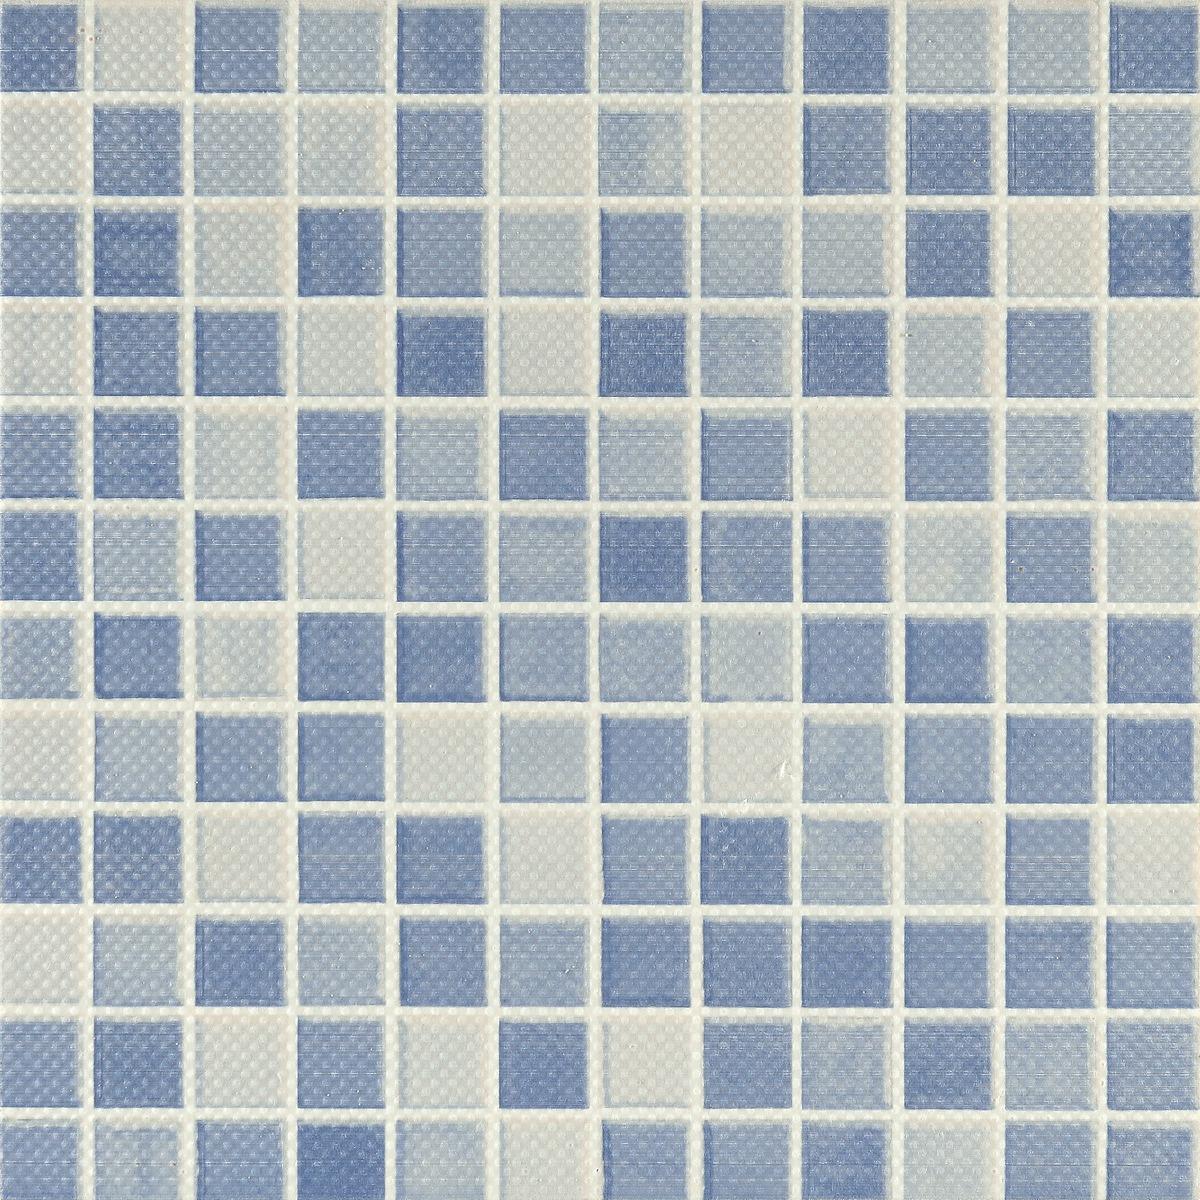 Matte Finish Tiles for Bathroom Tiles, Balcony Tiles, Hospital Tiles, Bar/Restaurant, Commercial/Office, Outdoor/Terrace